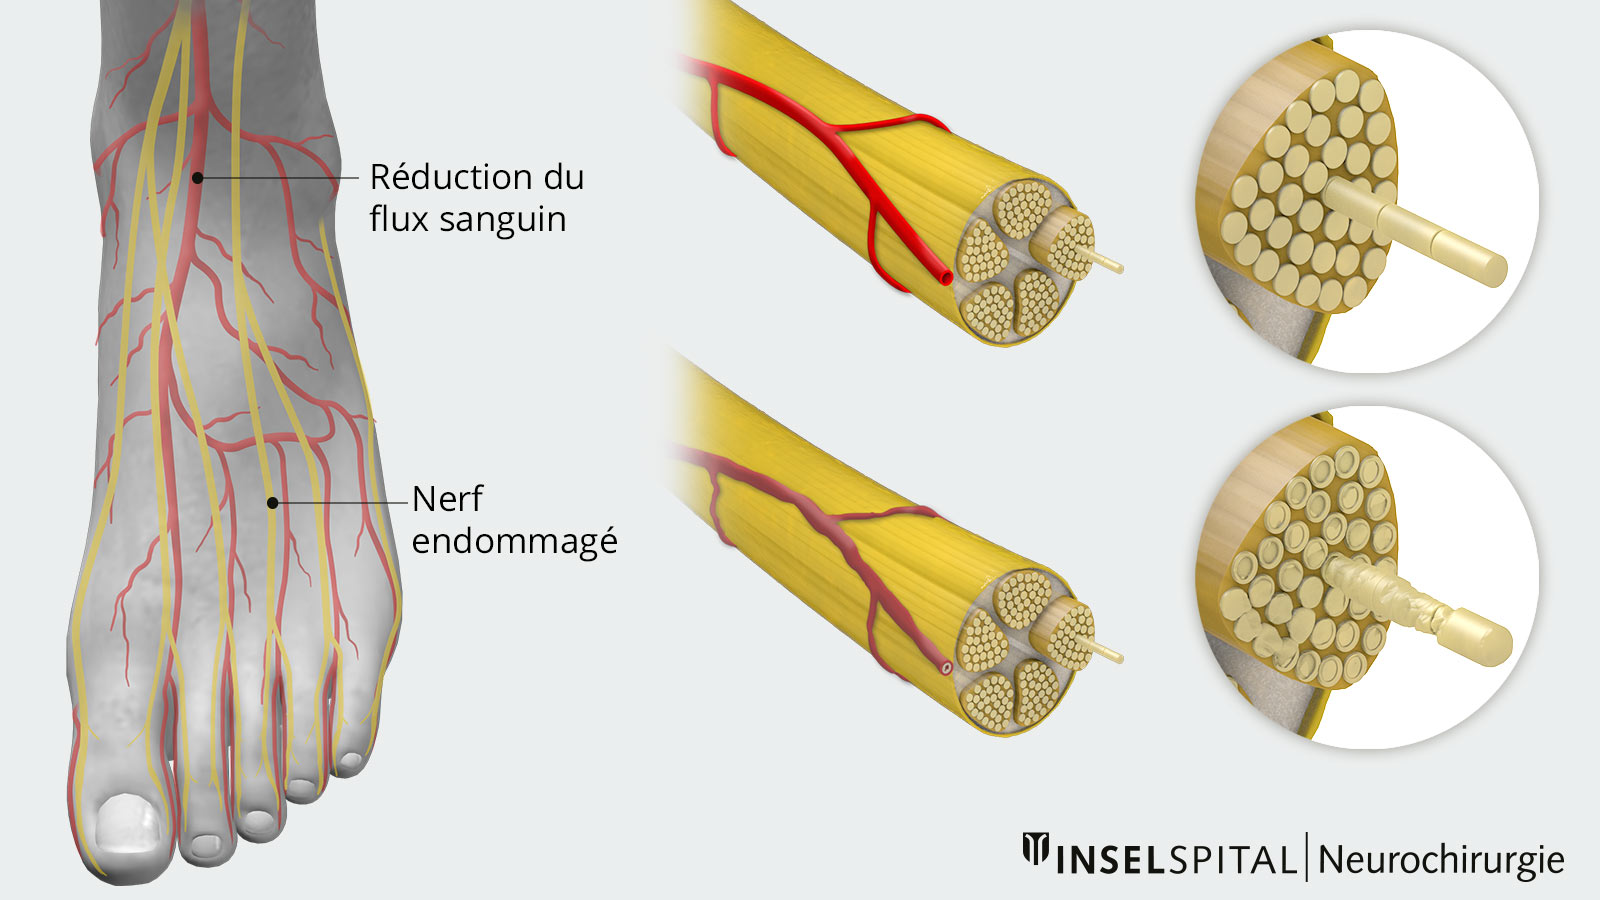 Le dessin montre à gauche un pied avec un flux sanguin réduit et des nerfs endommagés, et à droite la différence entre un nerf sain et un nerf endommagé.